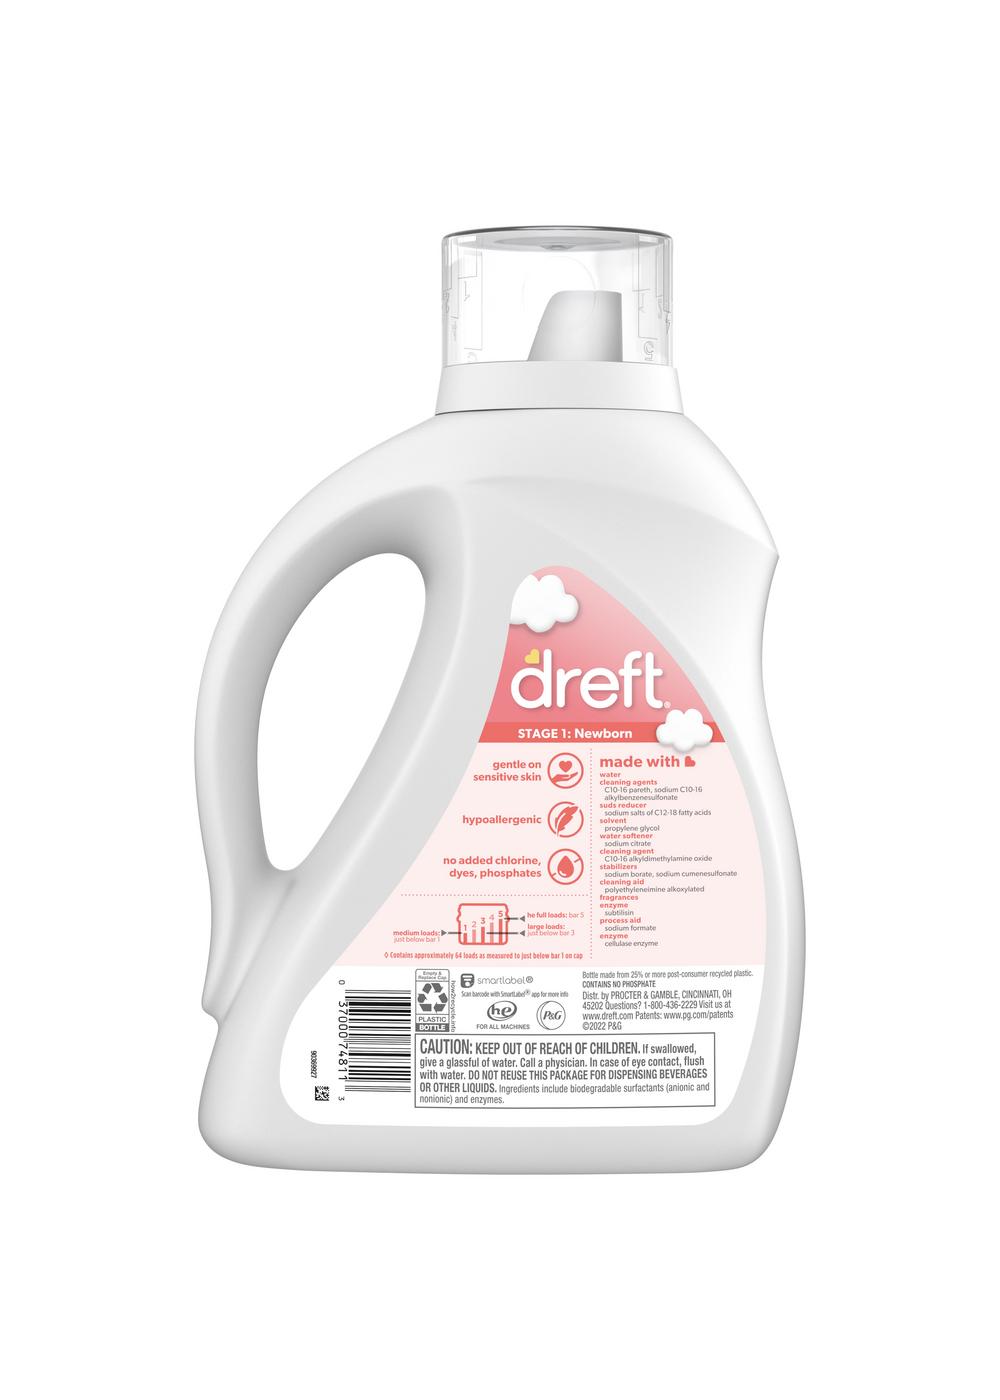 Dreft Stage 1: Newborn Liquid Laundry Detergent, 64 Loads; image 7 of 10